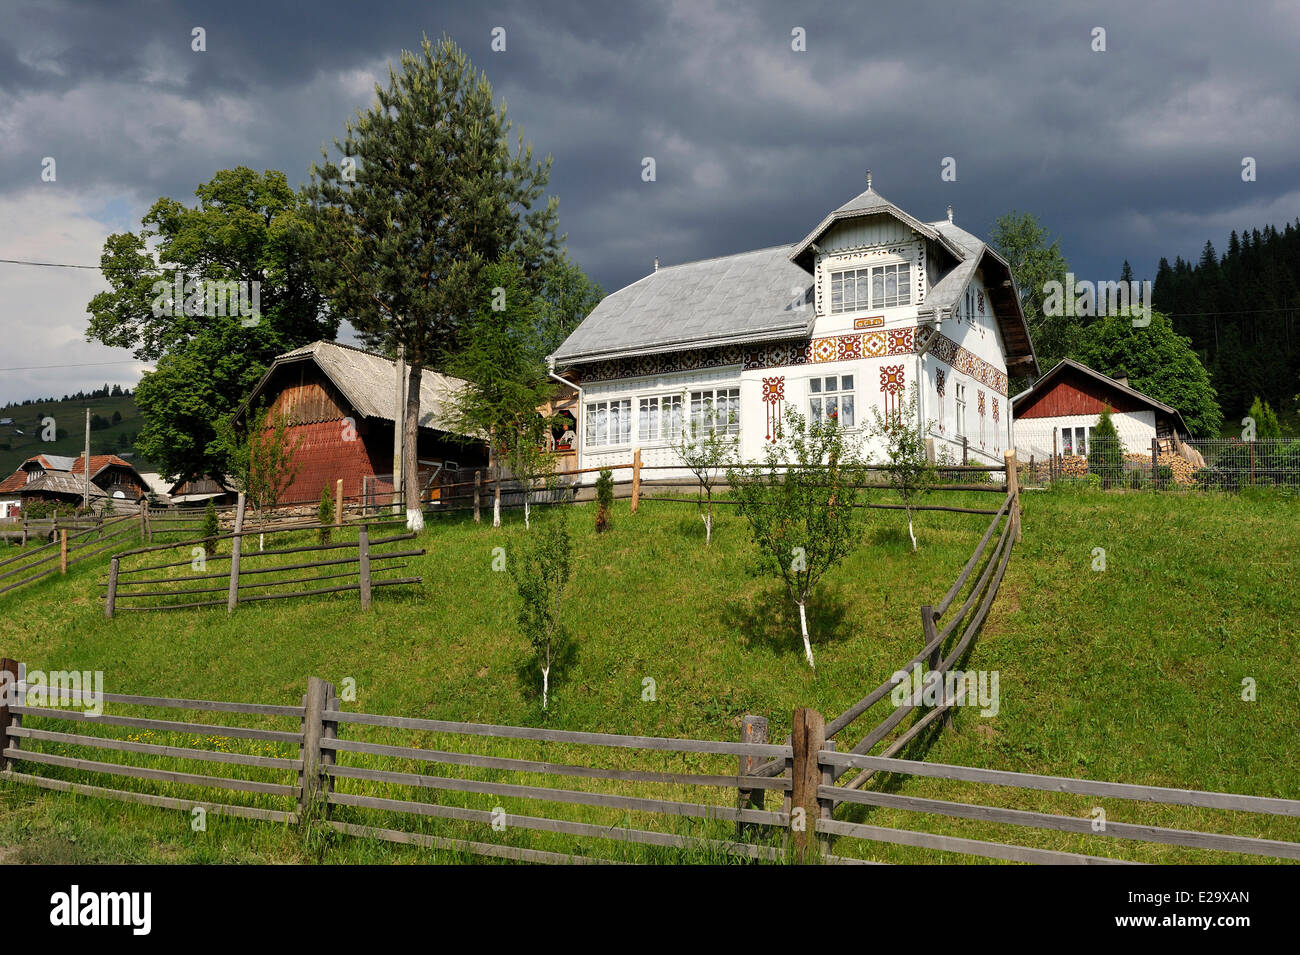 Romania, Bucovina region, traditional house Stock Photo